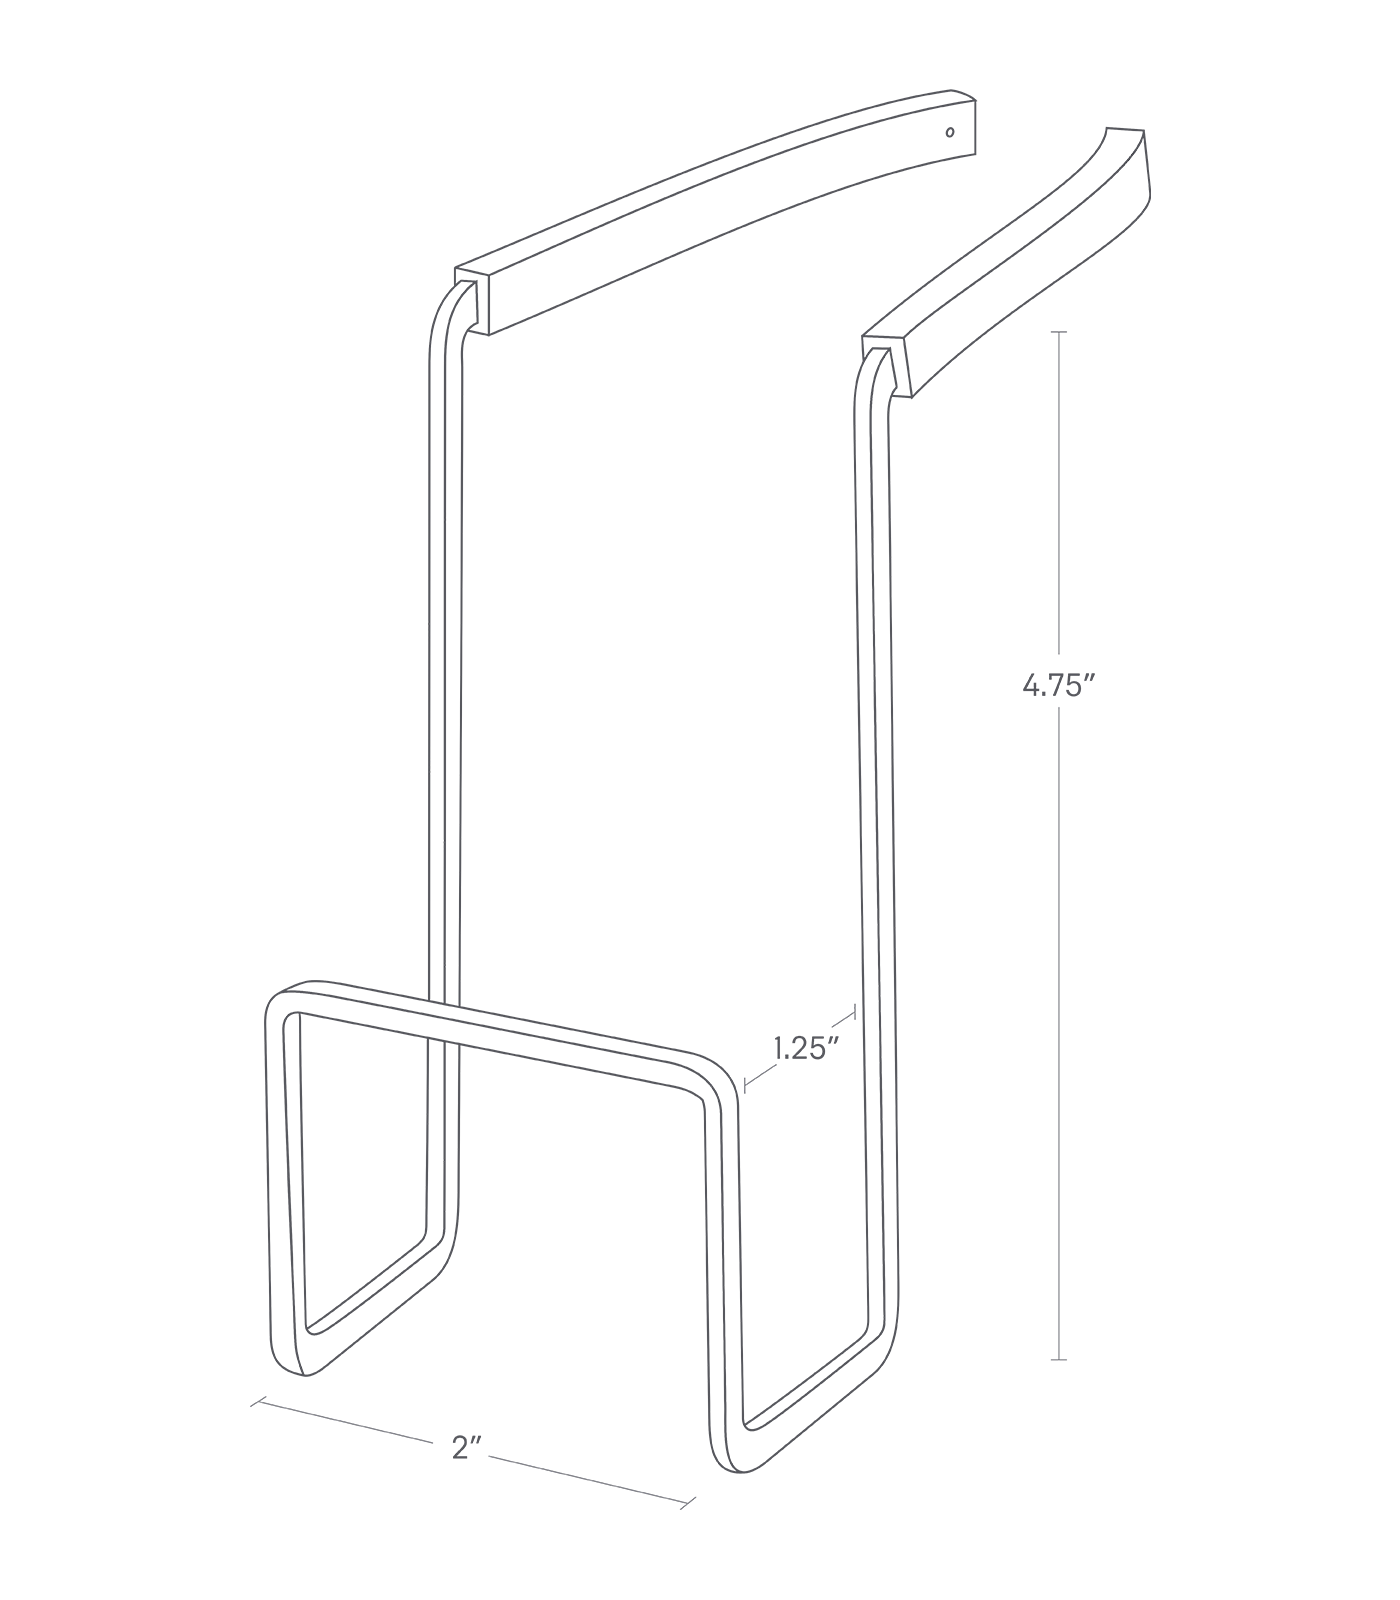 Dimension image for Faucet-Hanging Sponge Holder showing length of 2